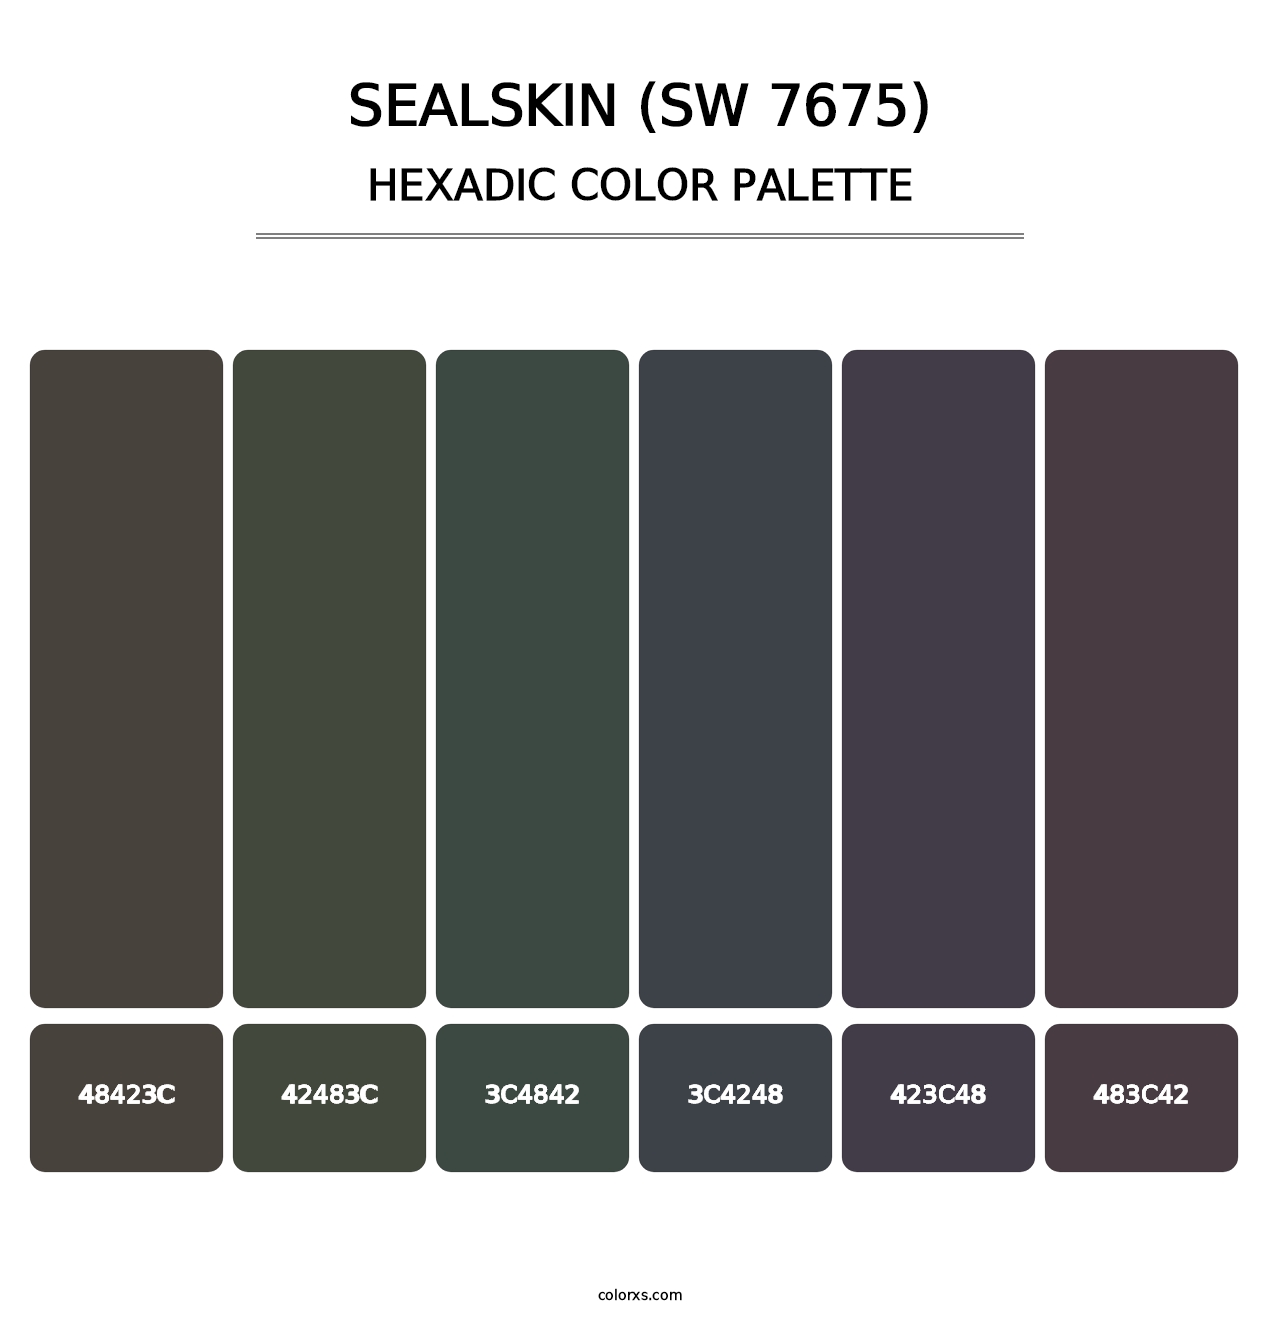 Sealskin (SW 7675) - Hexadic Color Palette